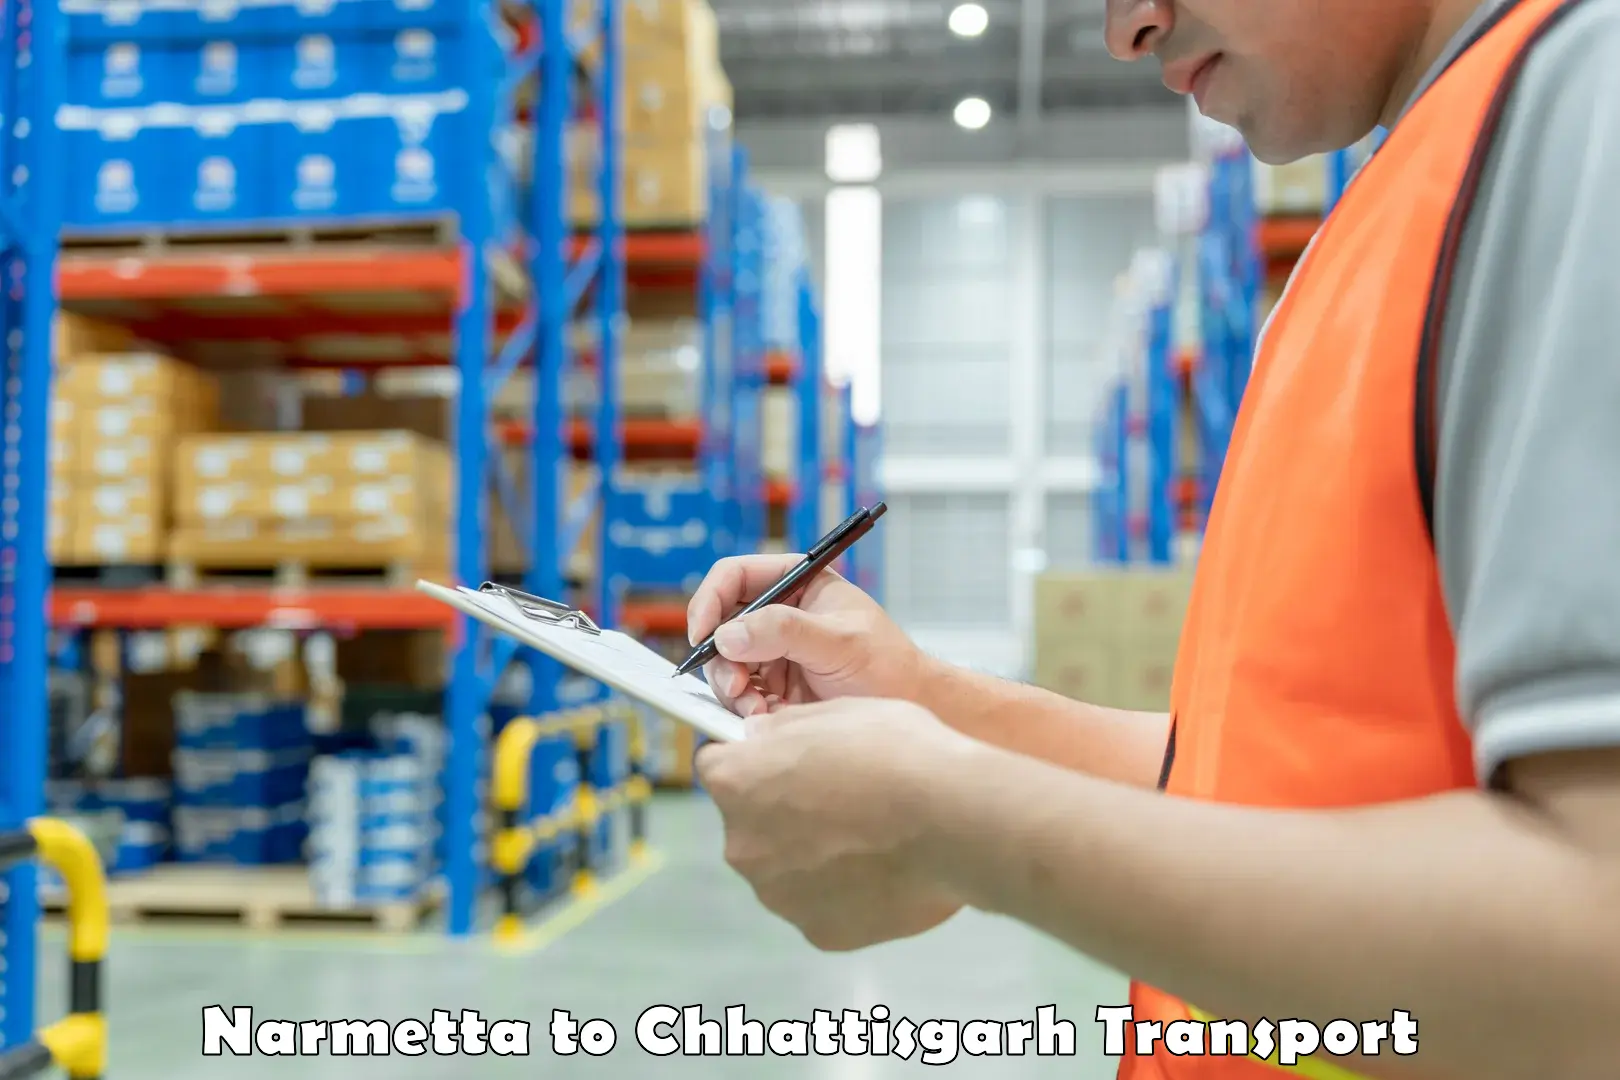 Package delivery services Narmetta to Korea Chhattisgarh